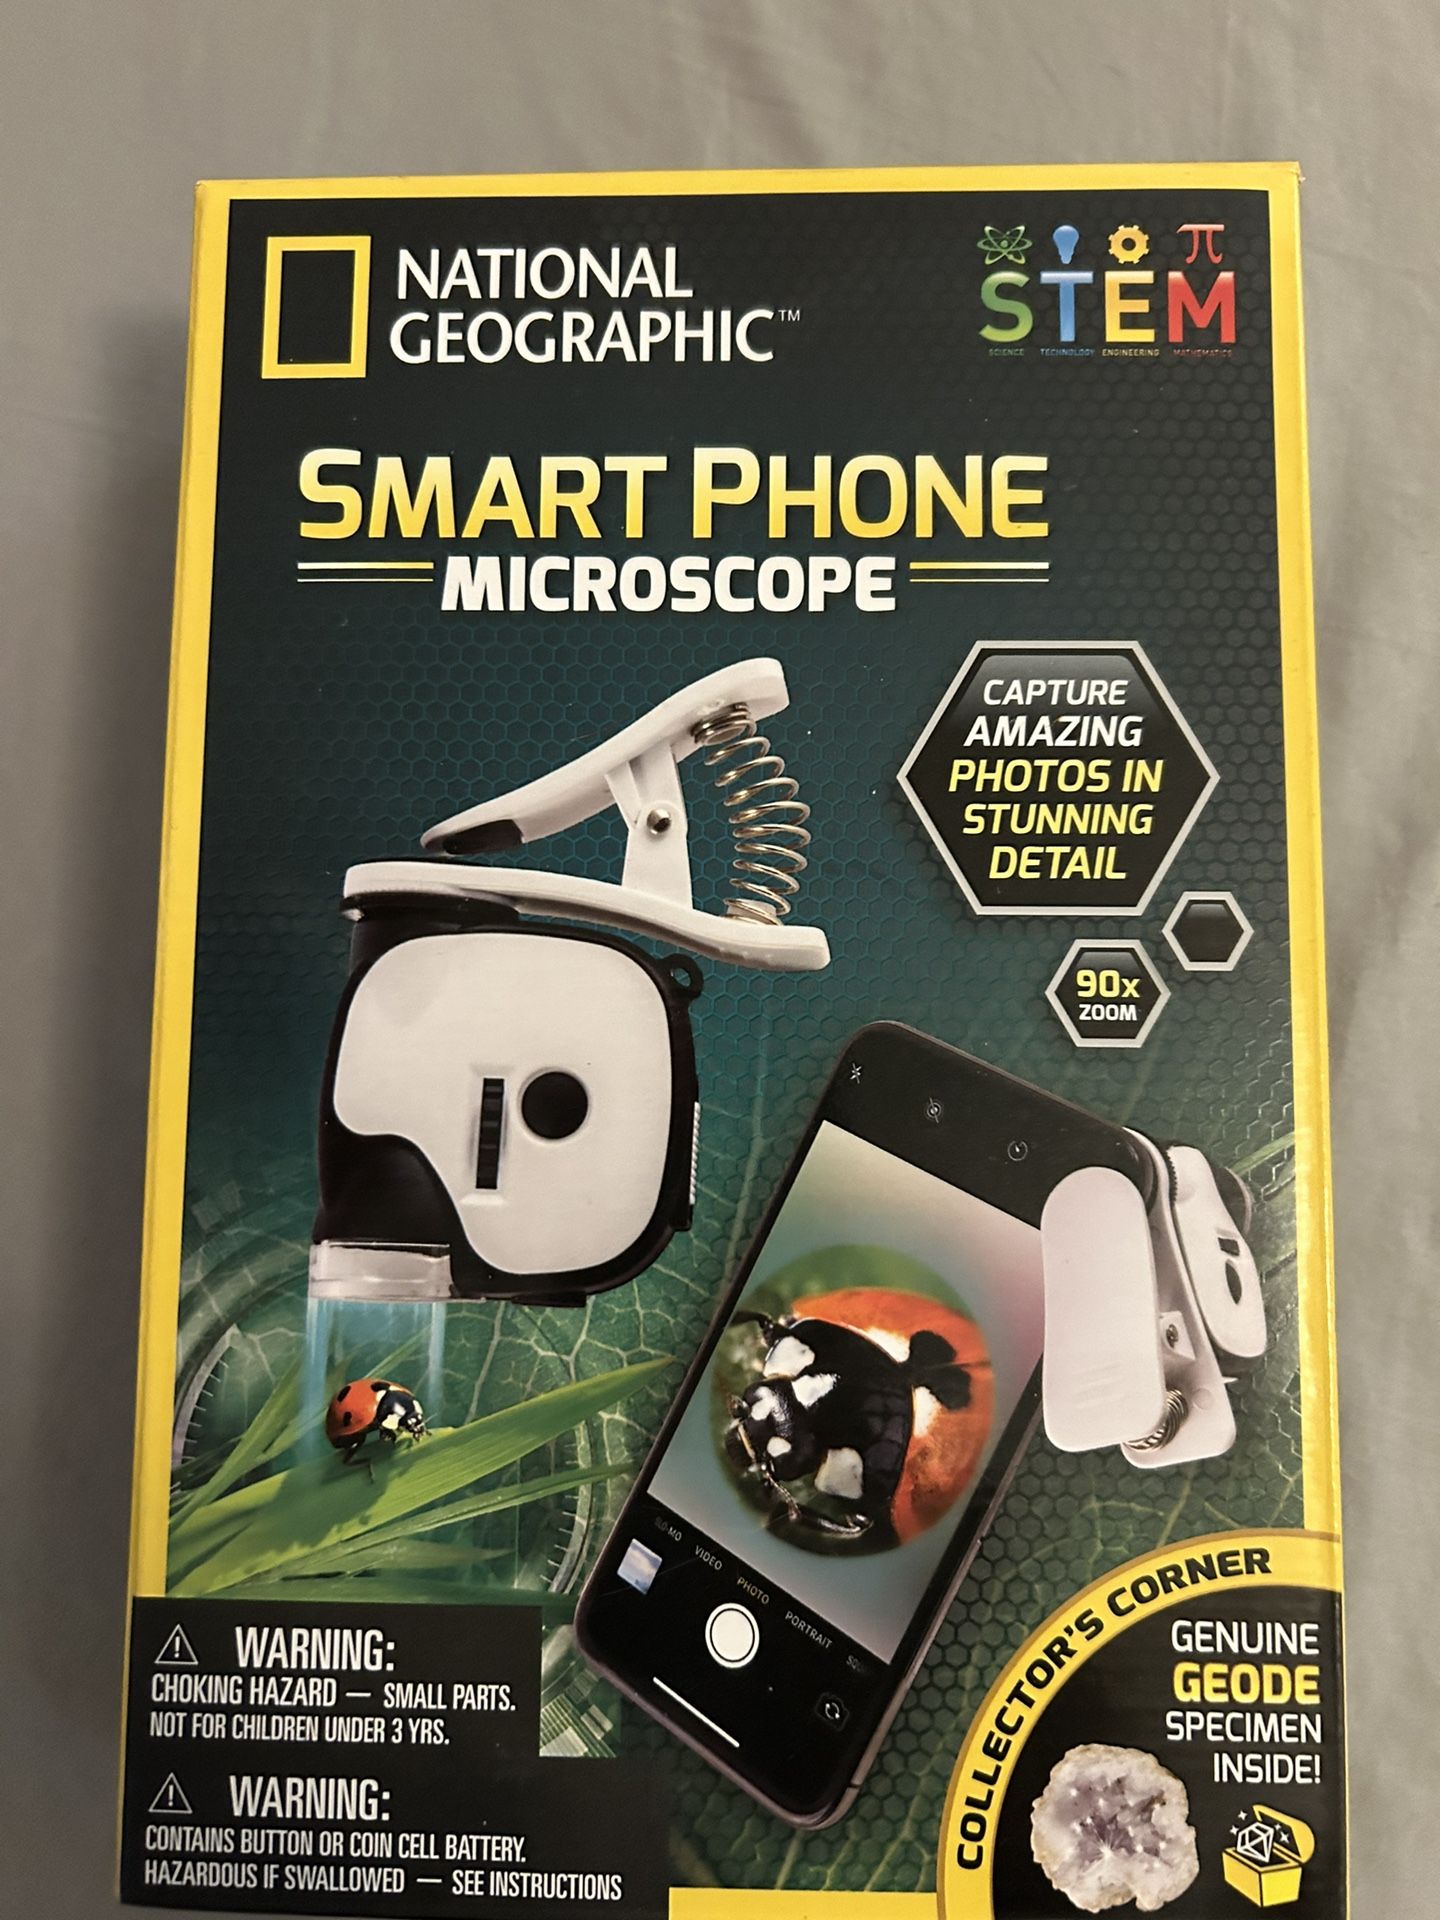 Smartphone Microscope